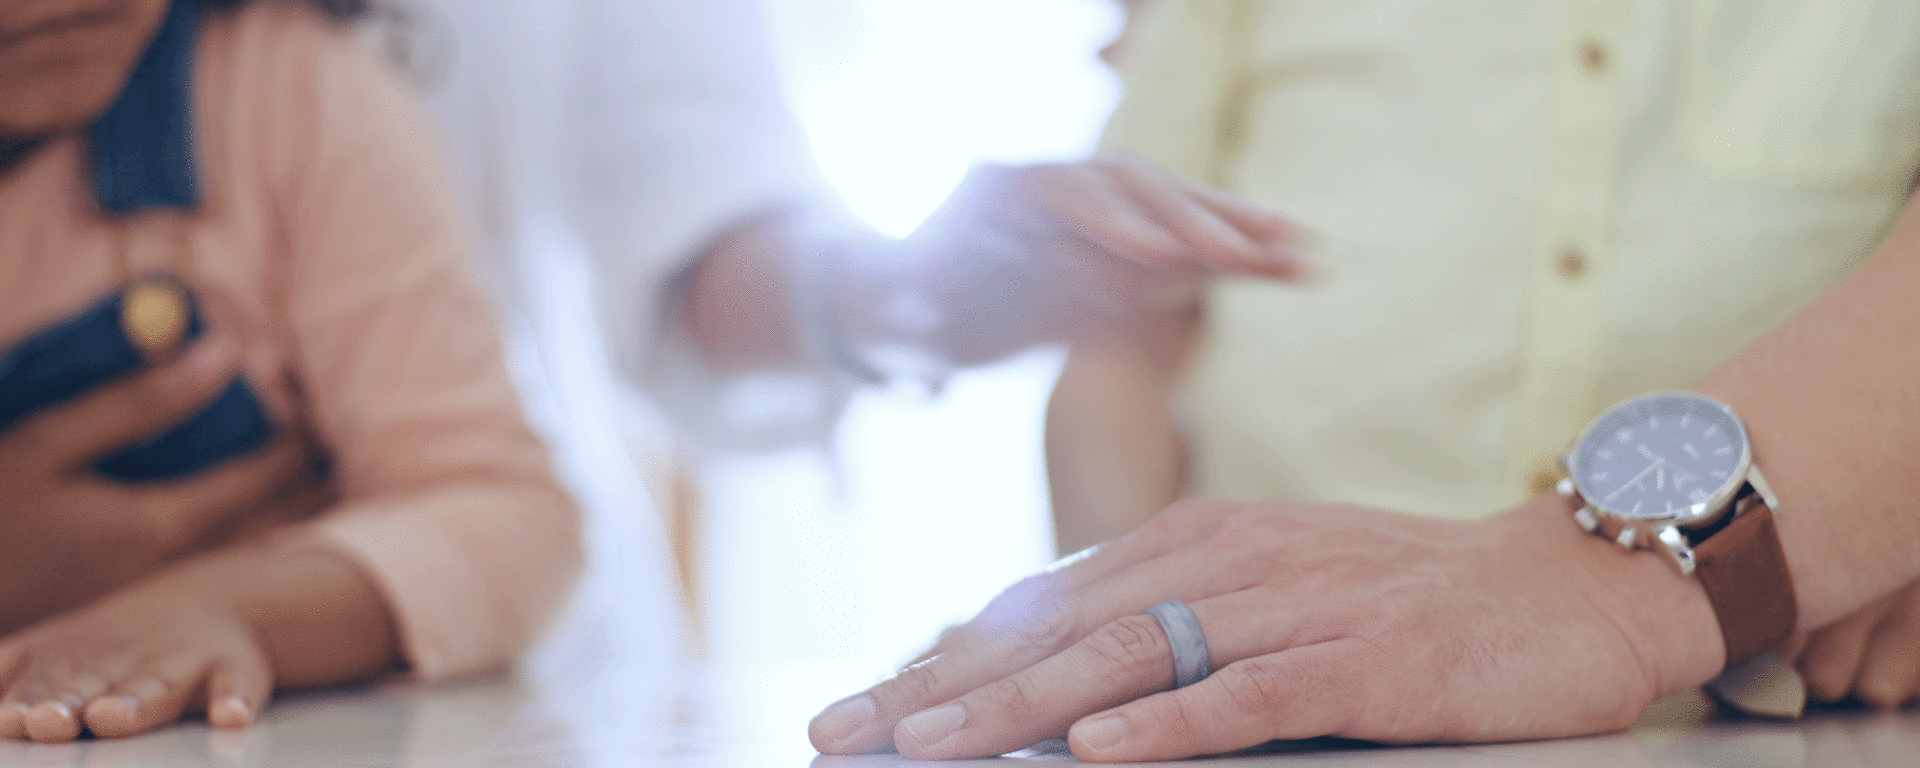 video of hands being held